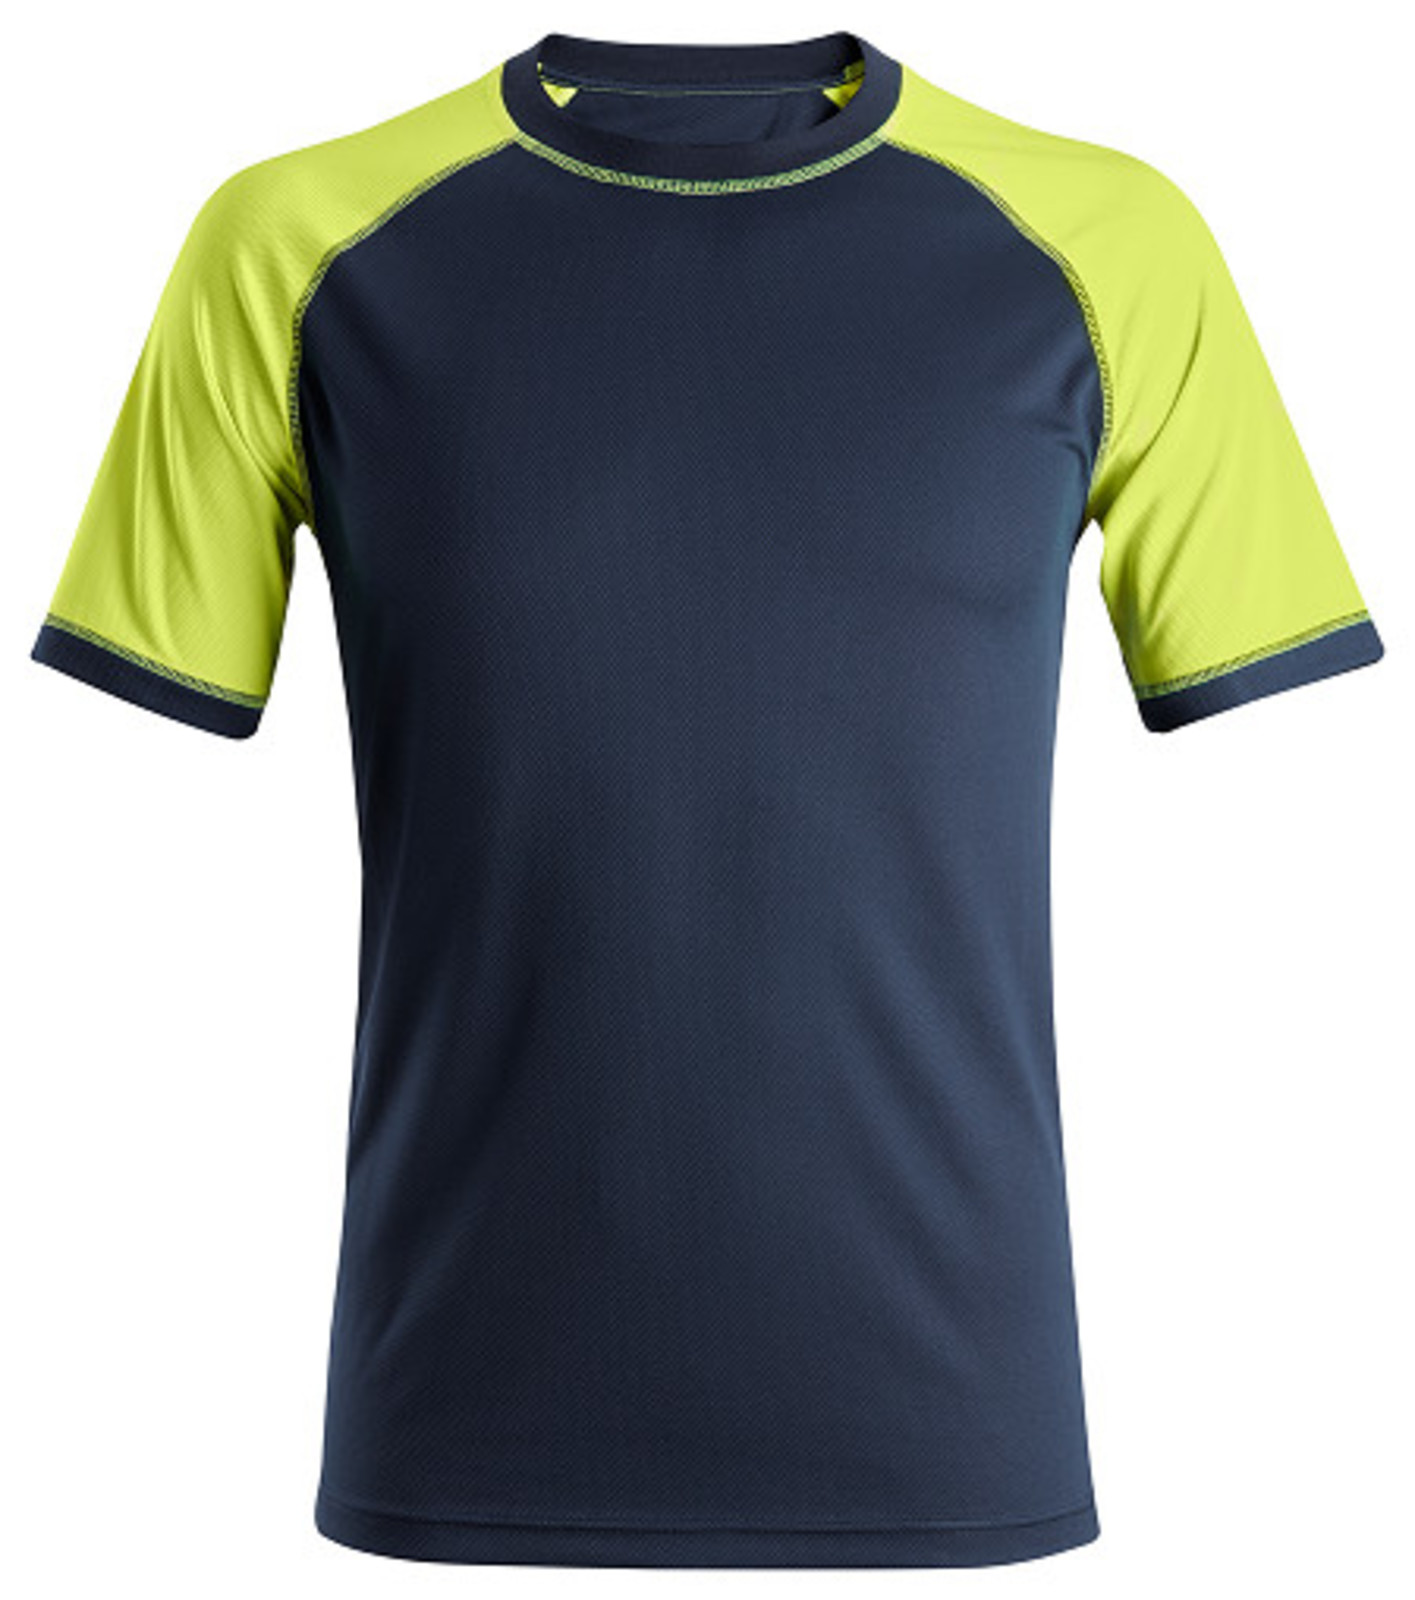 Pracovné tričko Snickers® Neon s krátkym rukávom - veľkosť: XL, farba: navy/žltá